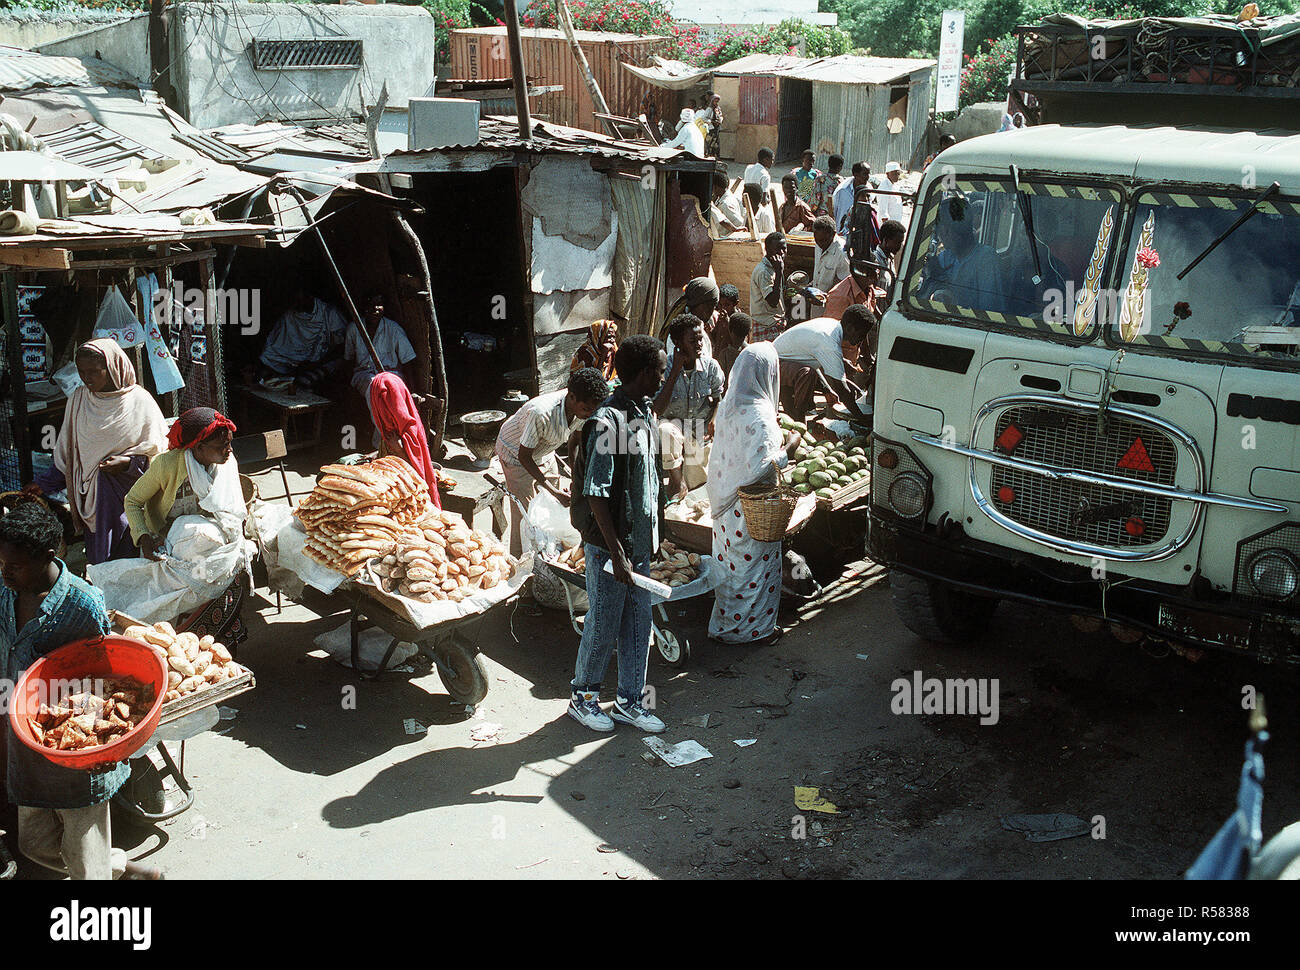 1992 - fornitori di somali velo la loro mercanzia su una strada trafficata durante la multinazionale soccorsi Restore Hope. Mogadiscio (Somalia) Foto Stock